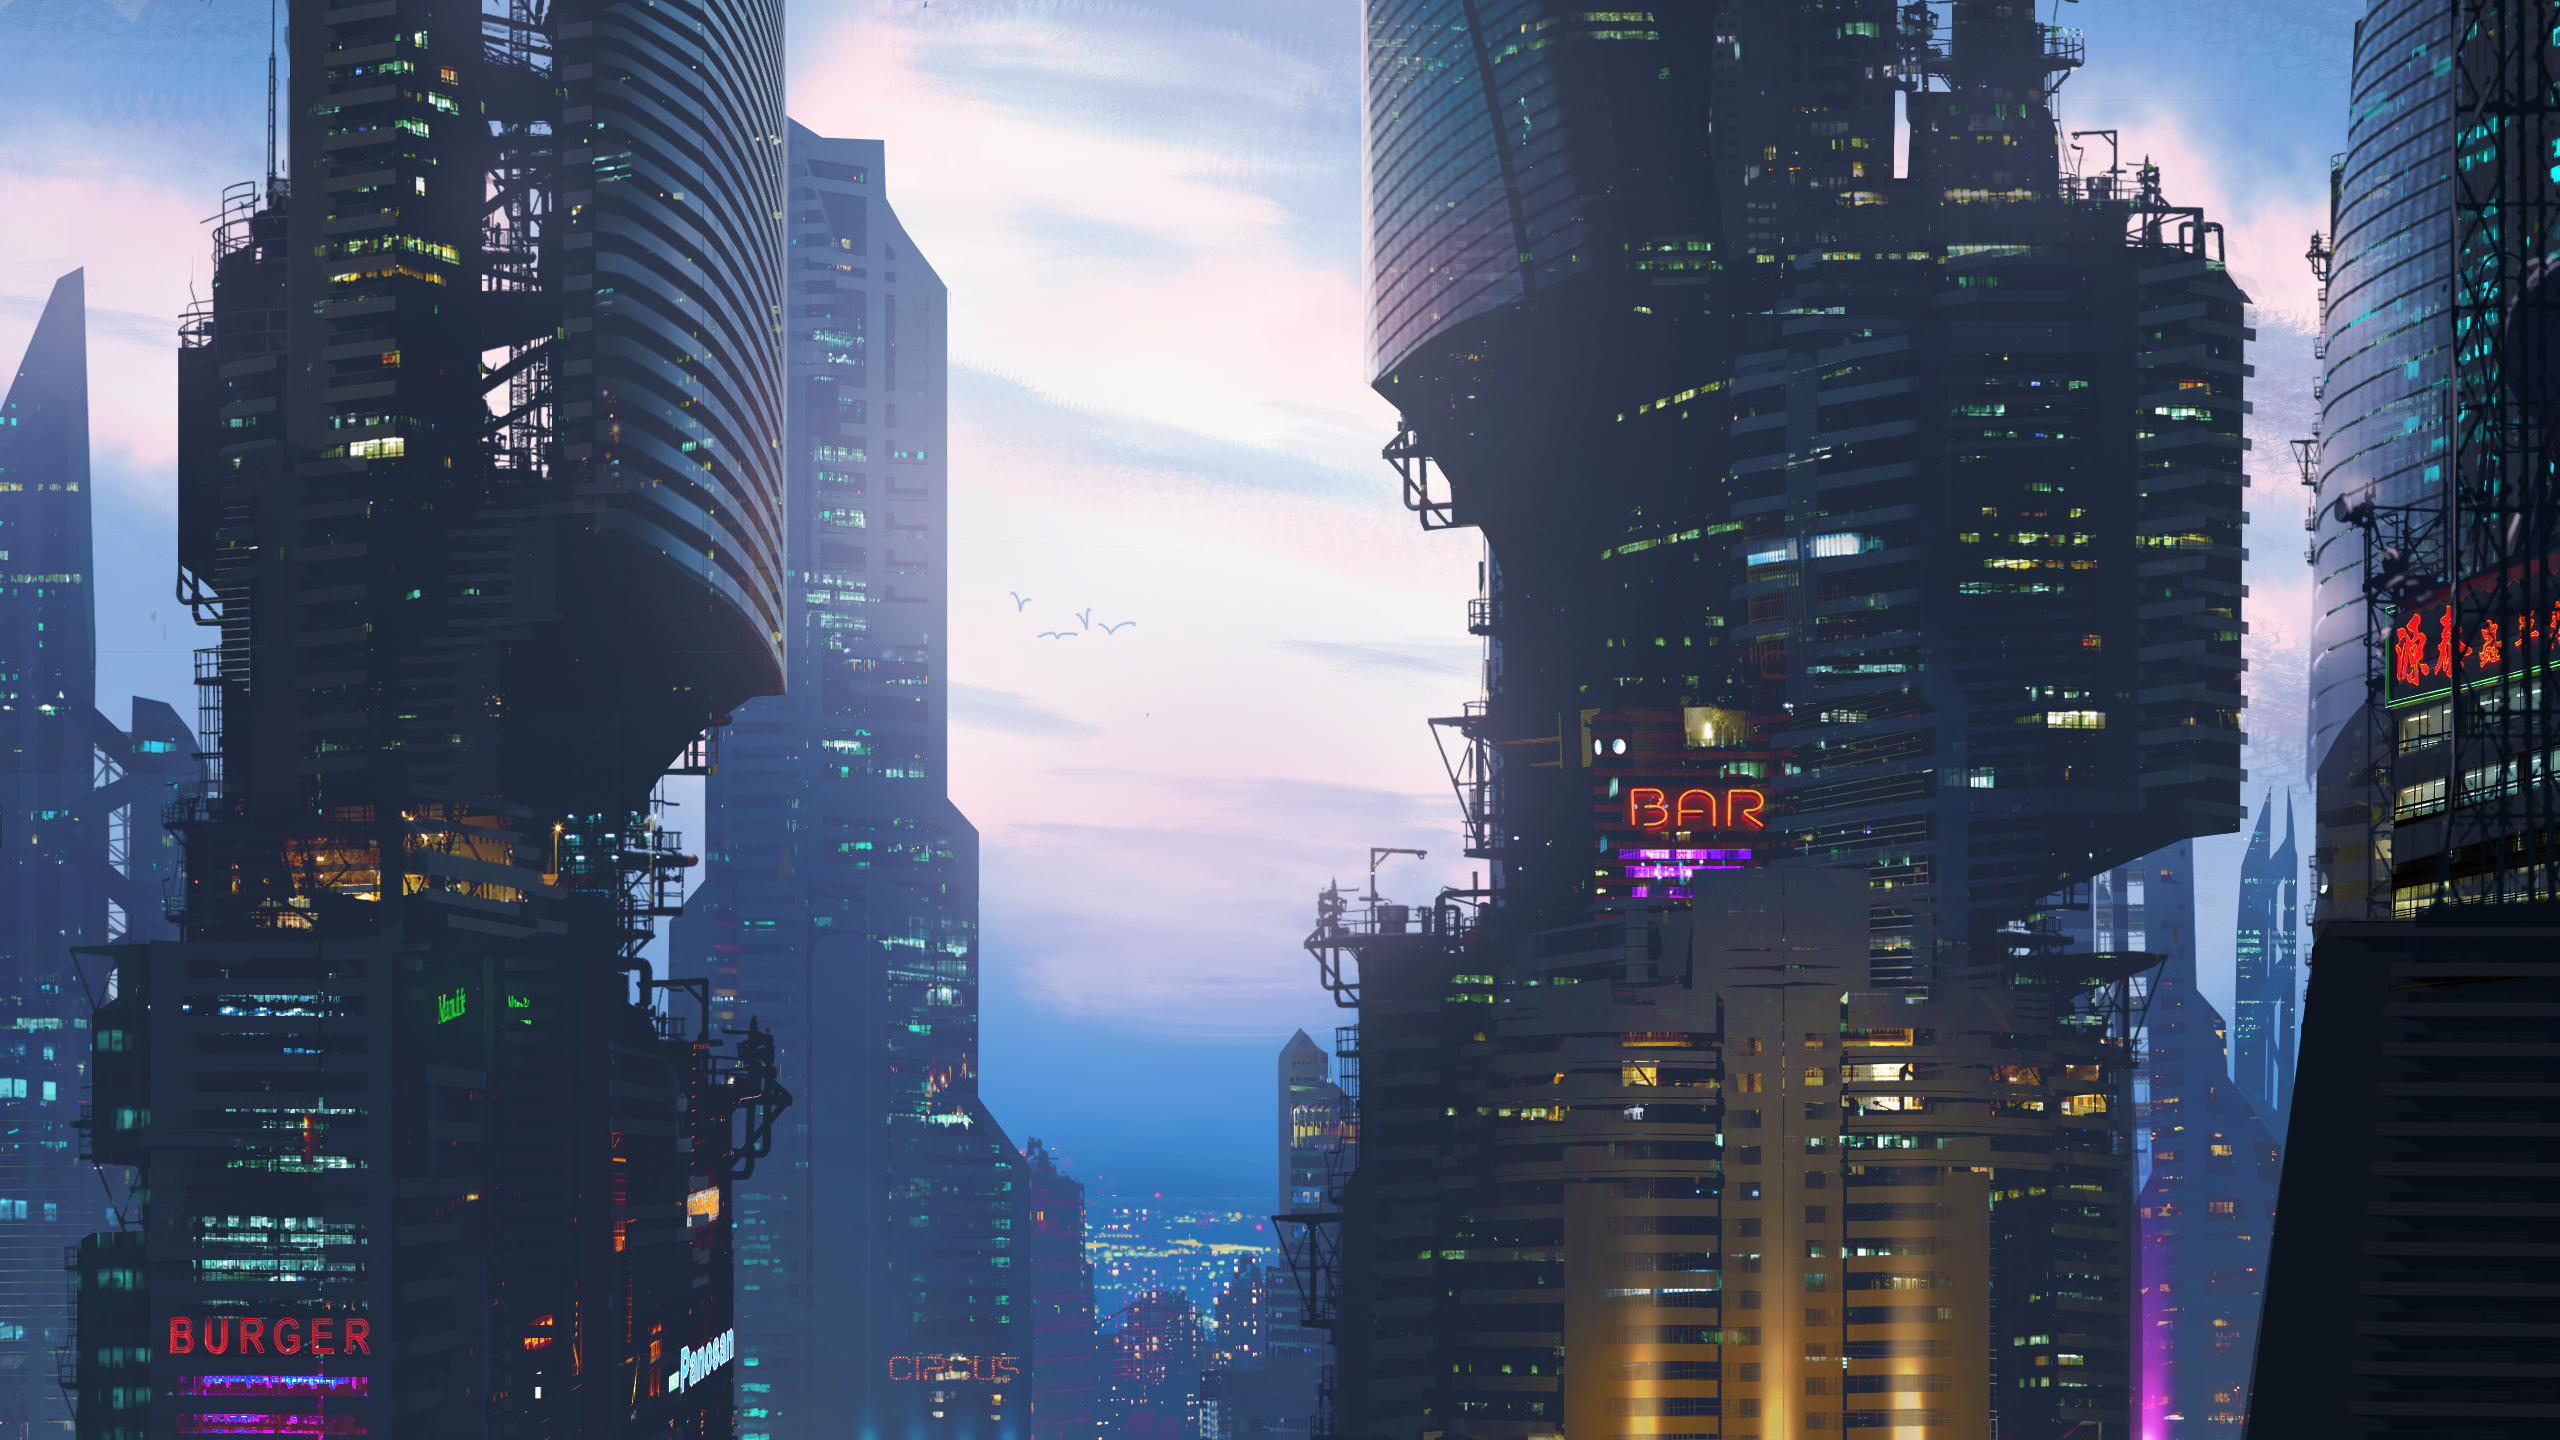 Building Cloud Cyberpunk Cityscape Sci Fi Skyscraper 2560x1440